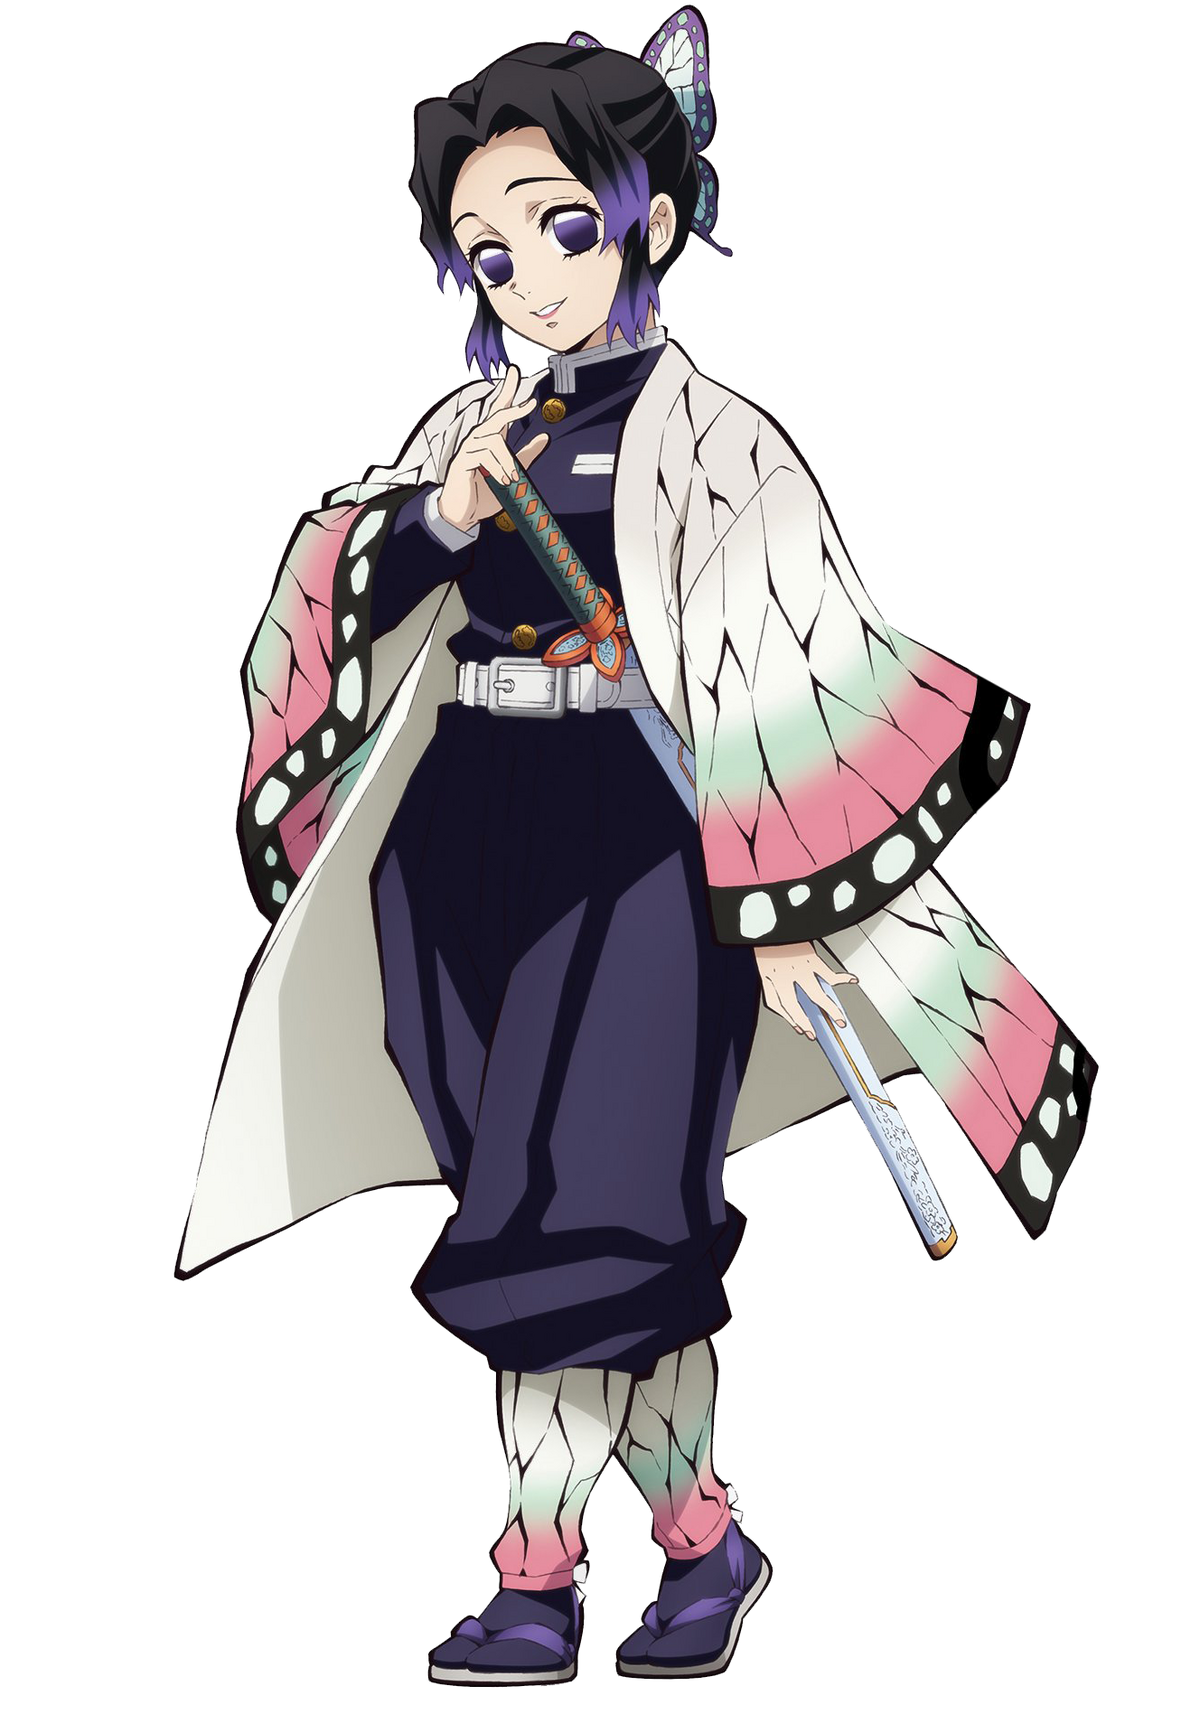 Kochou Shinobu: Kochou Shinobu - một trong những nhân vật được yêu thích nhất của anime \